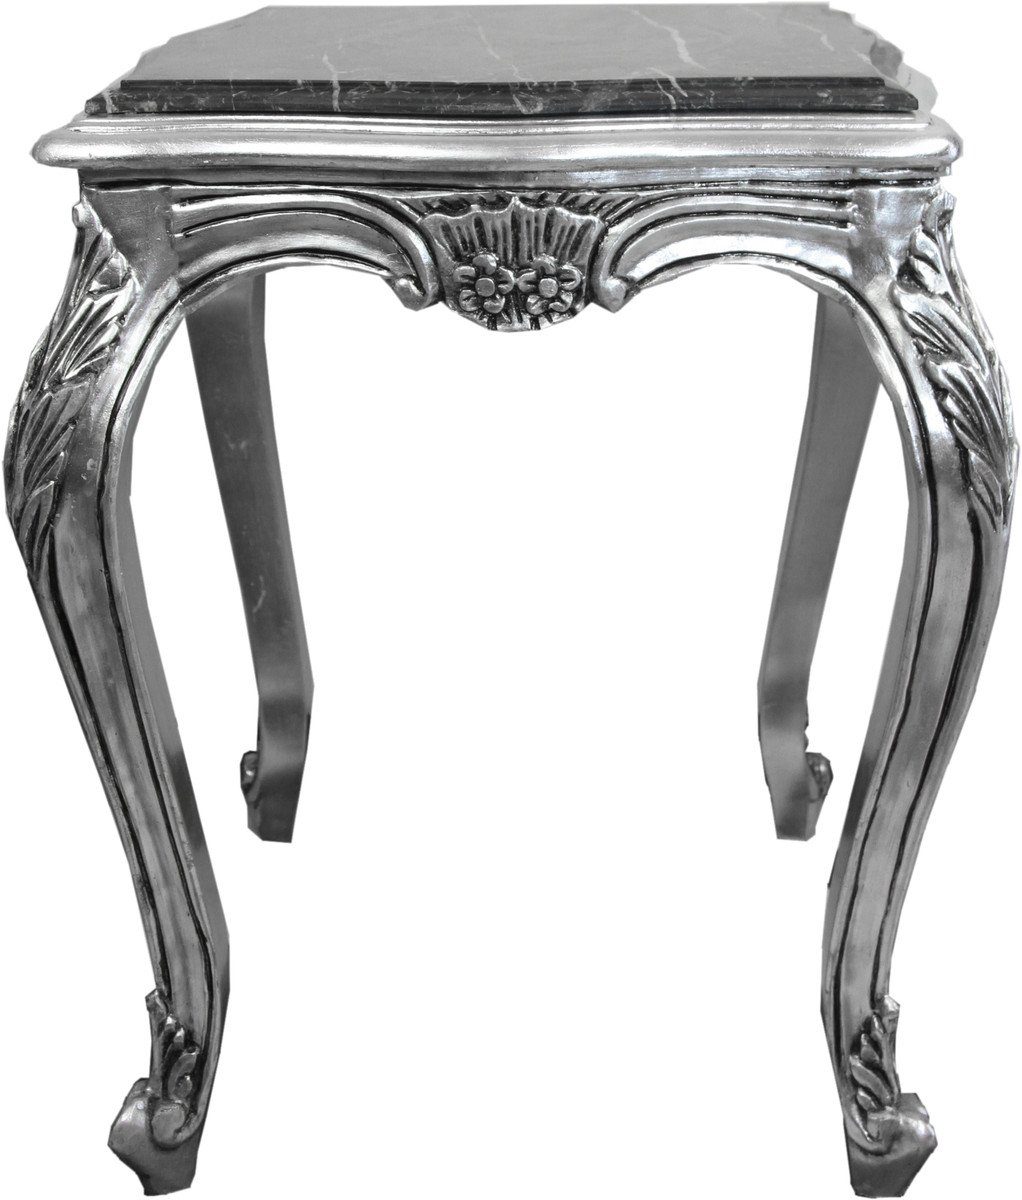 Casa Padrino Beistelltisch Barock Beistelltisch Silber mit schwarzer Marmorplatte 52 x 52 x H. 65 cm - Barockmöbel Beistell Tisch